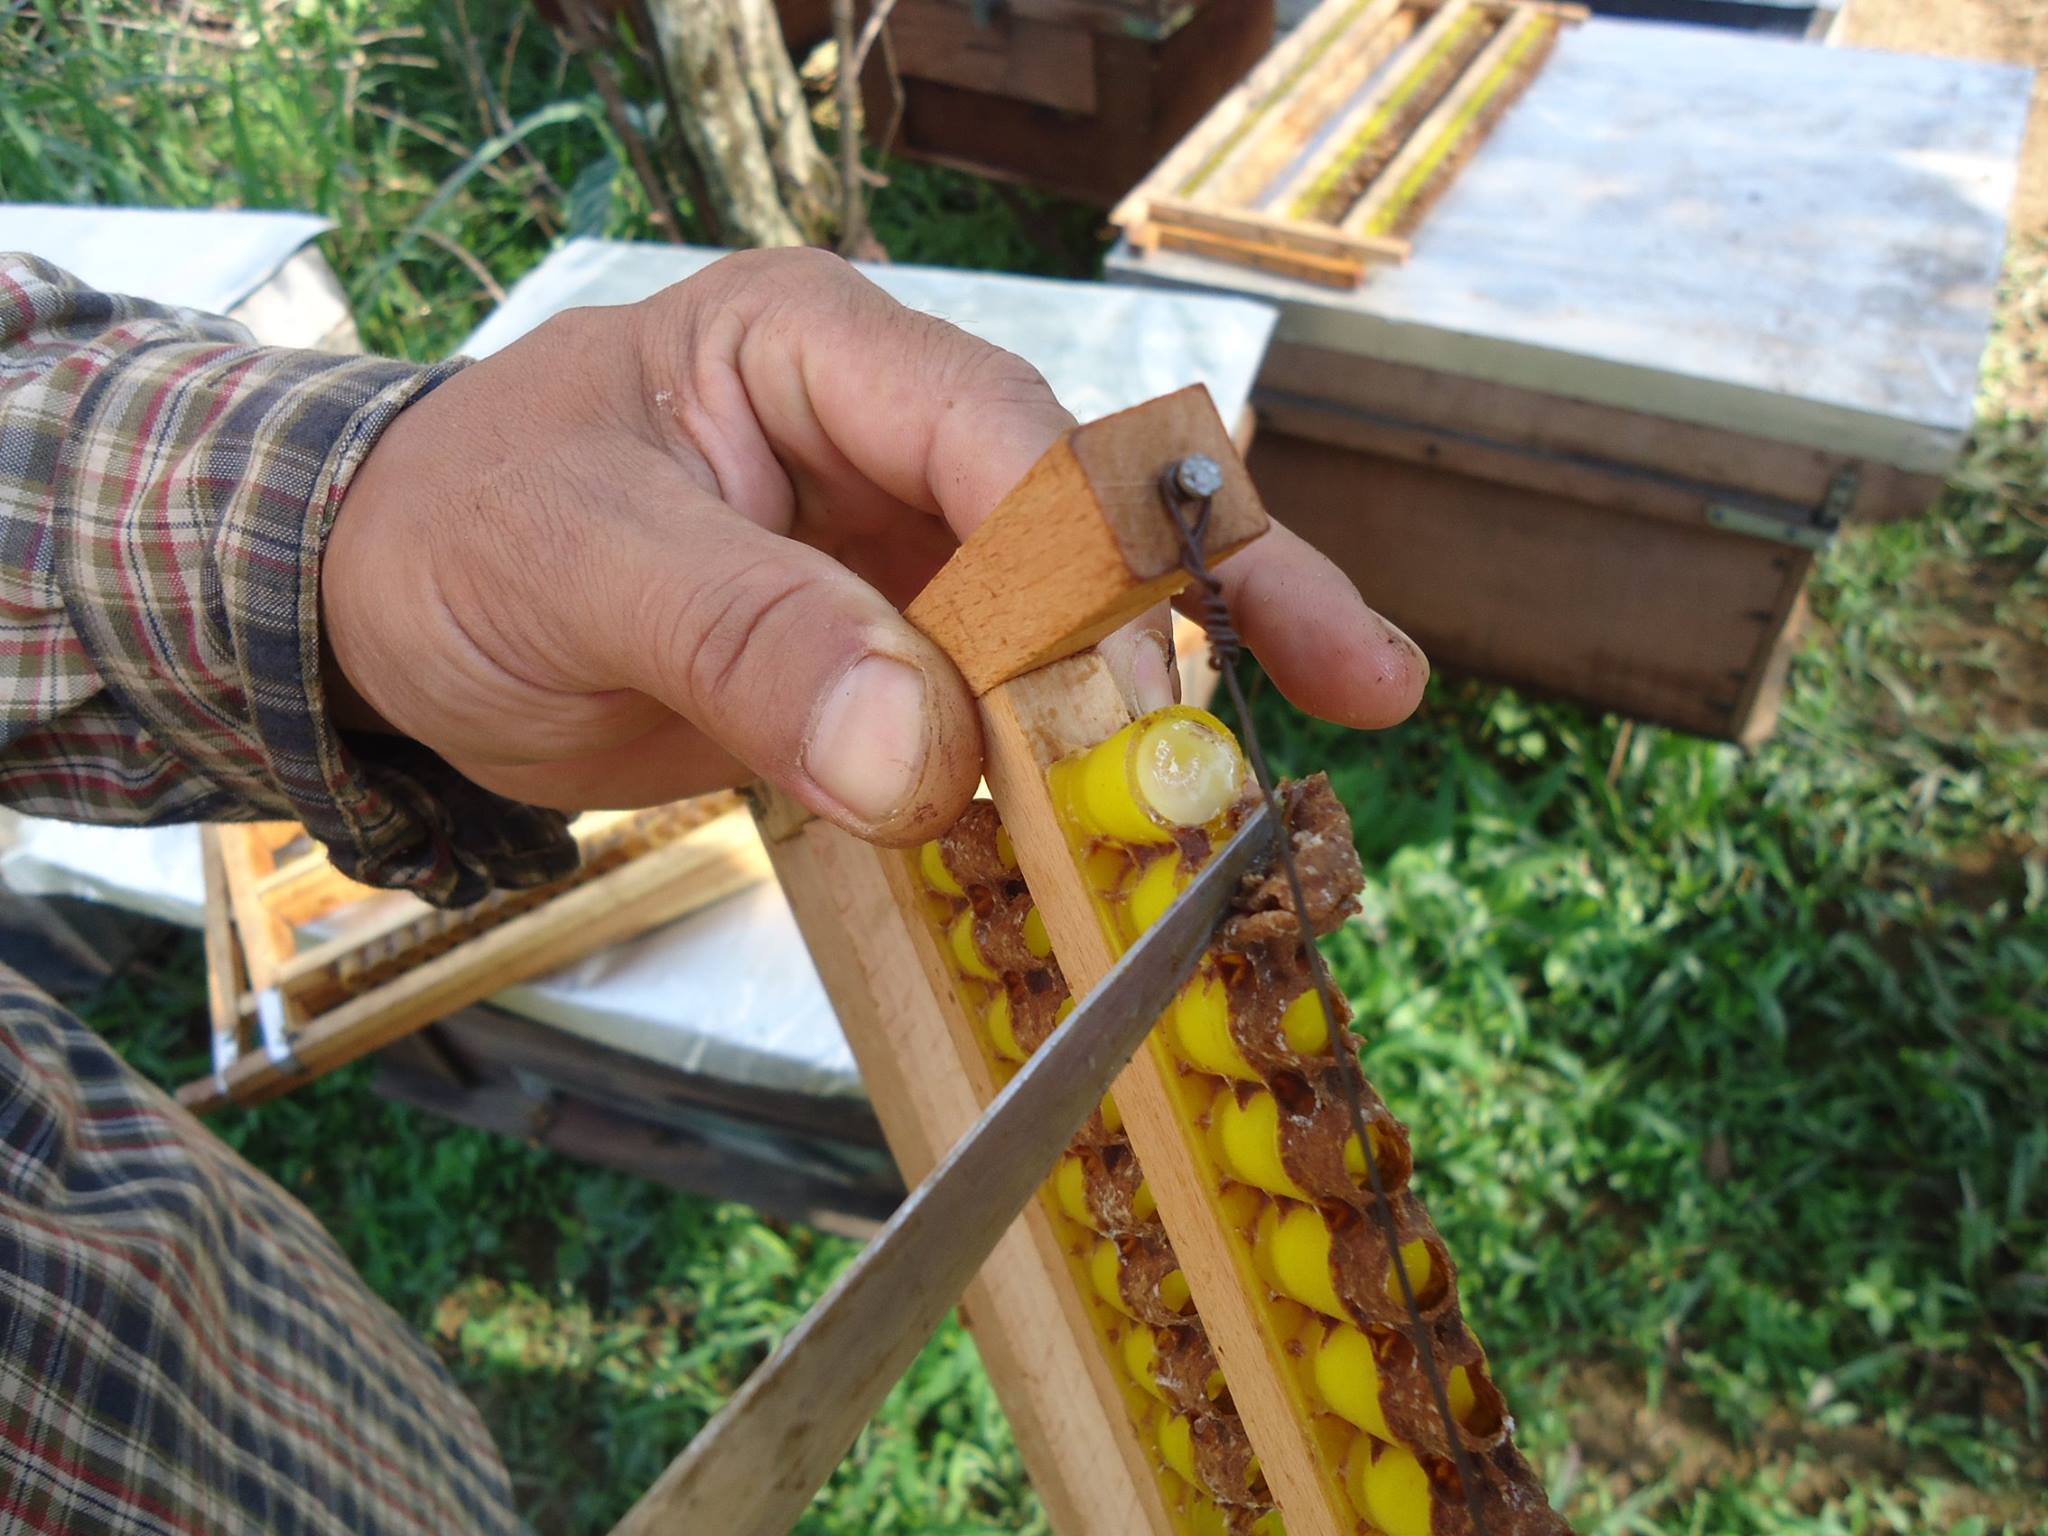 Bán sỉ sữa ong chúa trực tiếp từ trại ong sữa Lâm Đồng 9